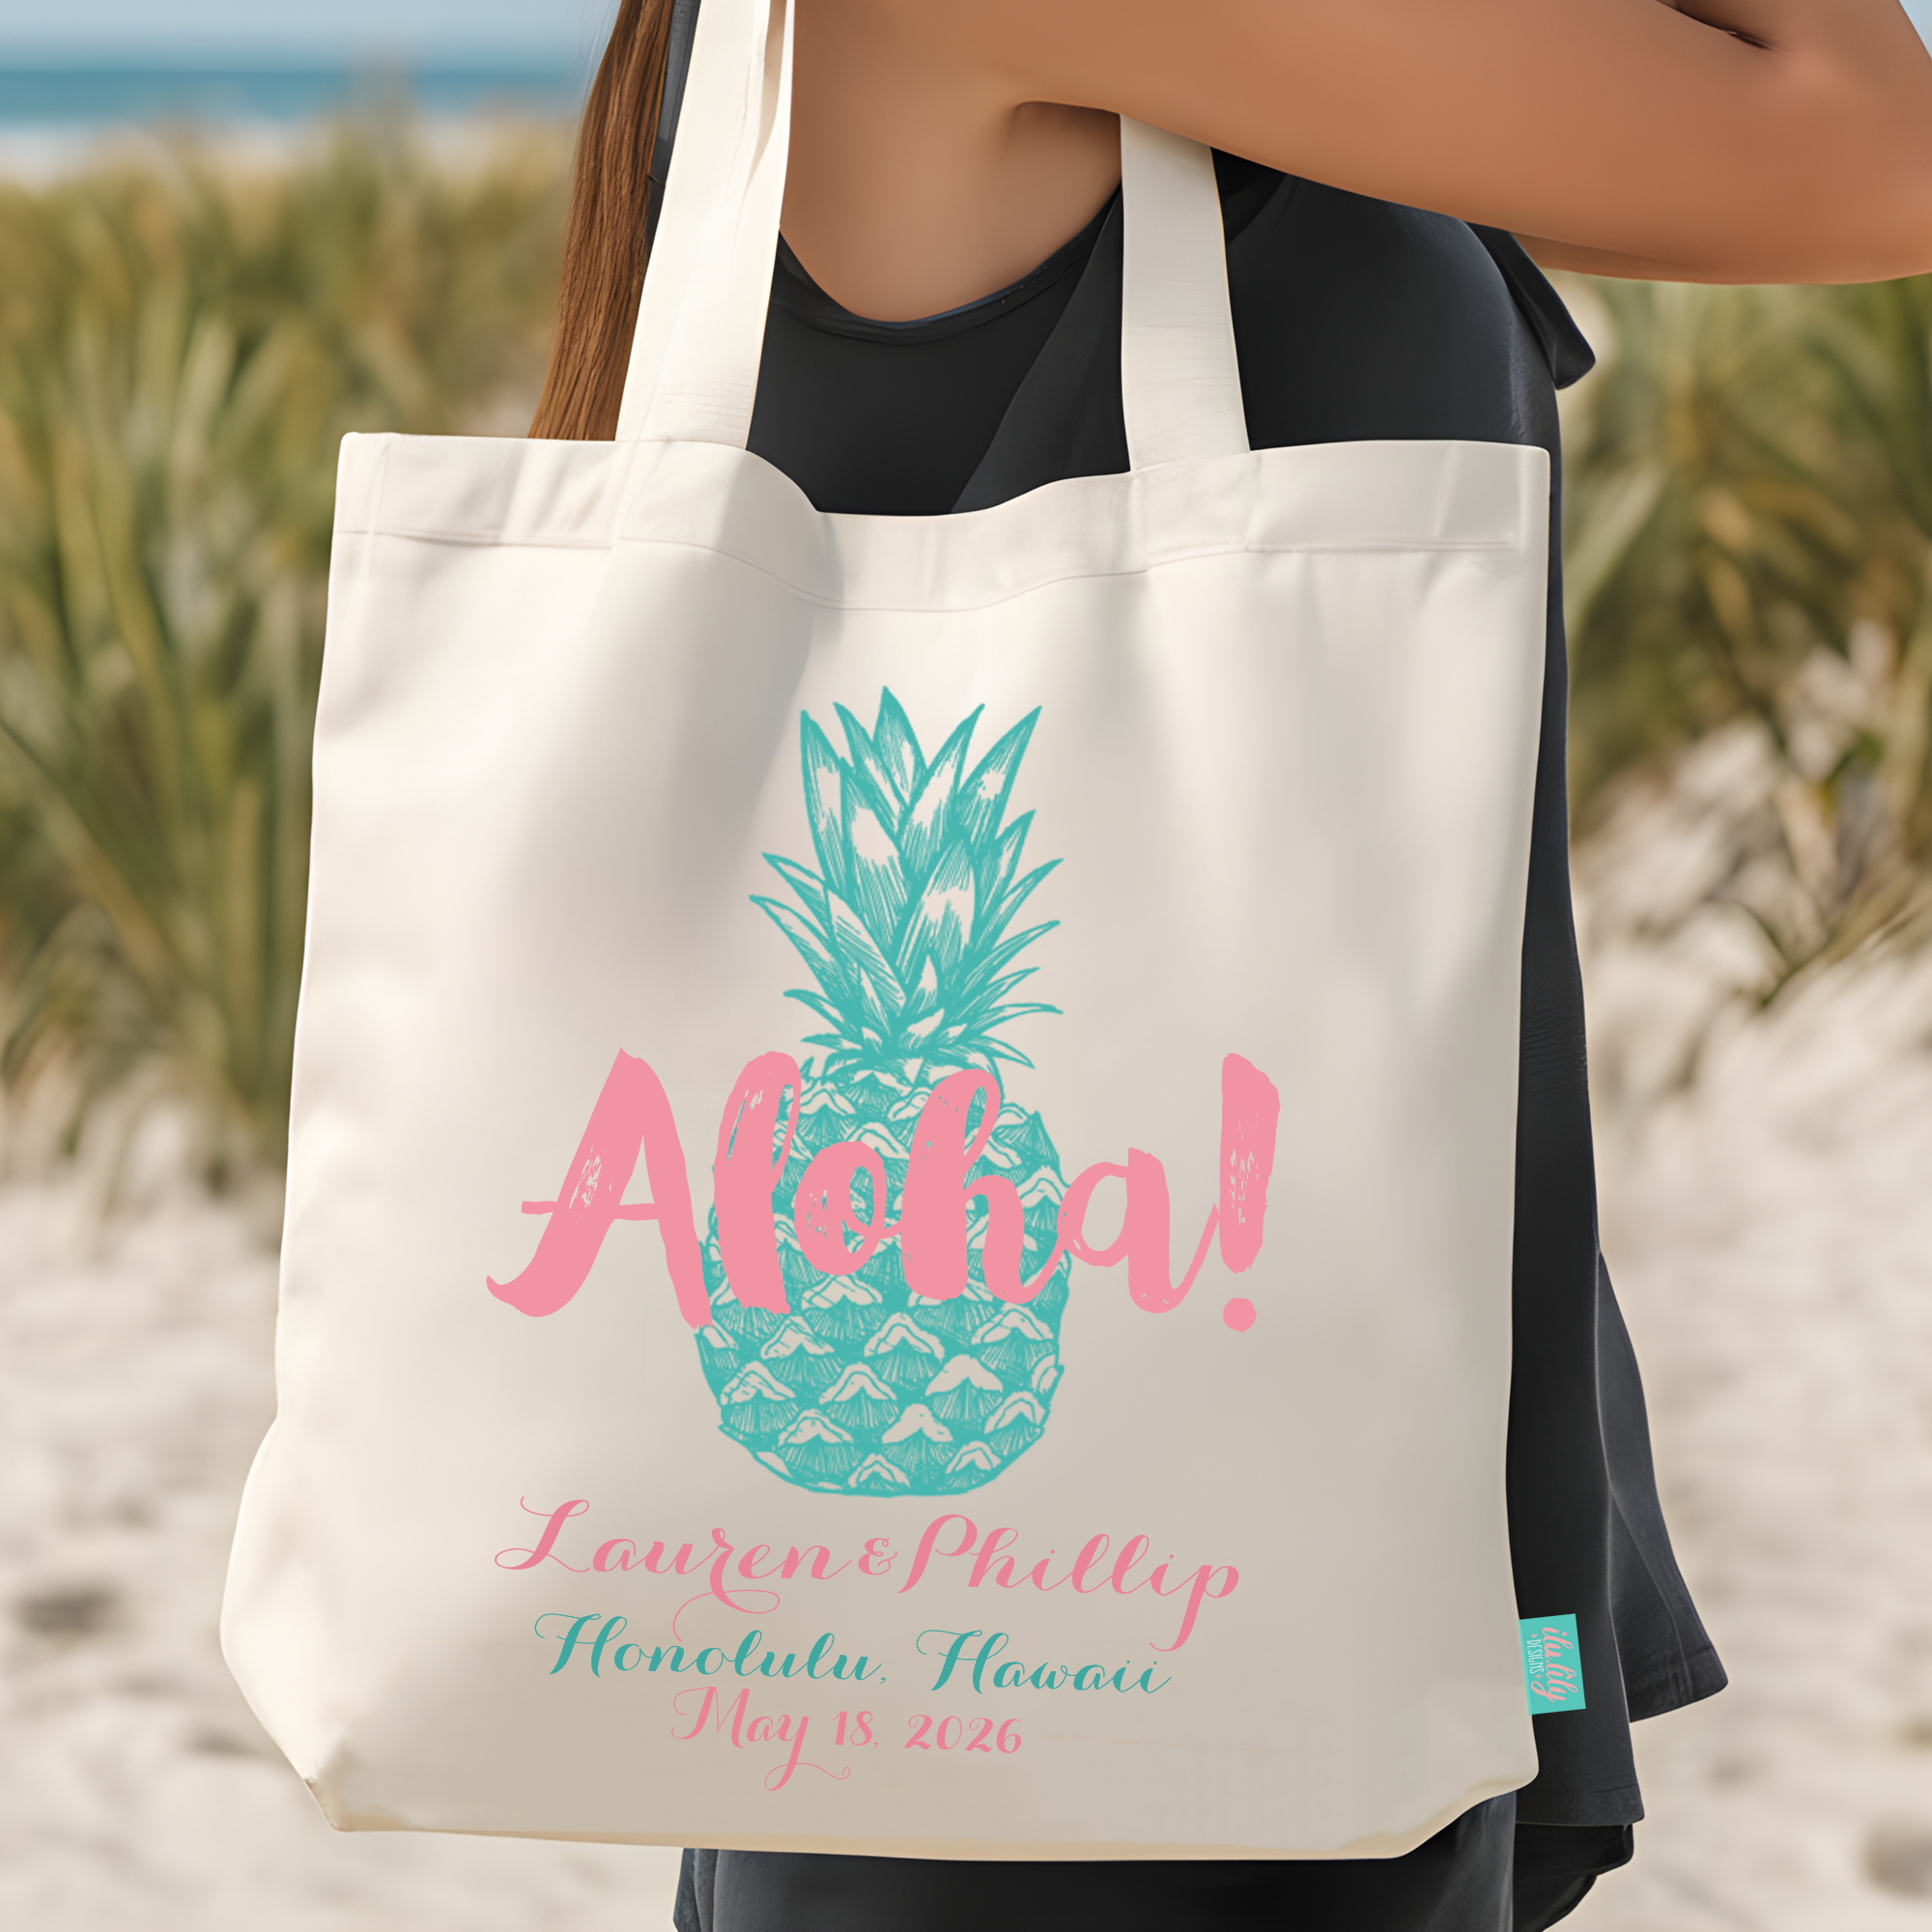 Destination Wedding Tote Bag Favor | Hawaii Wedding Tote Bags | Aloha! Pineapple